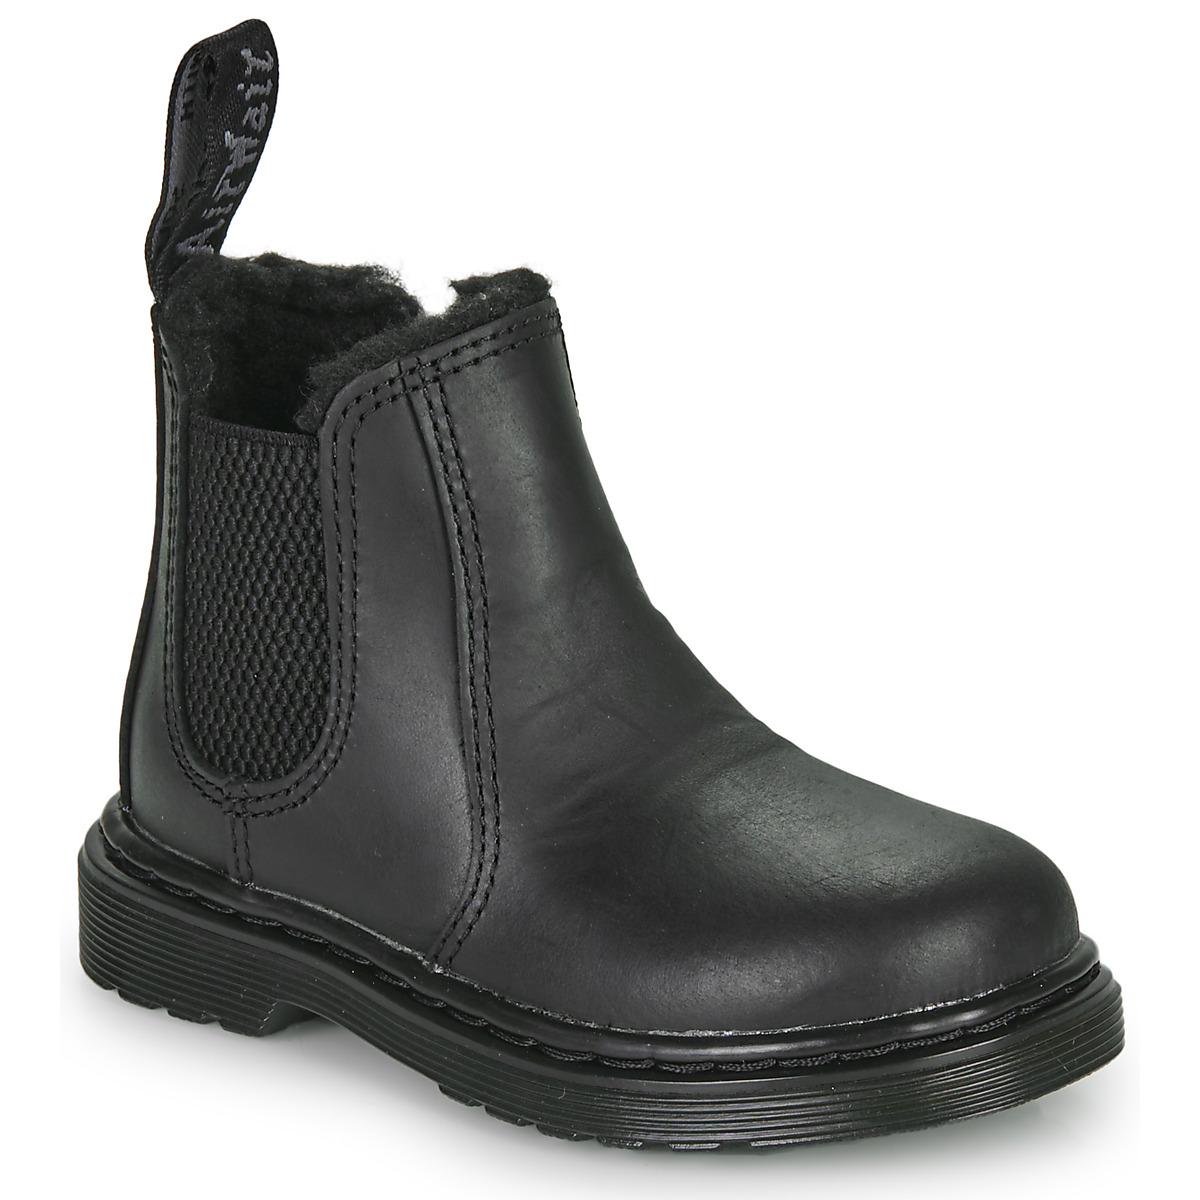 Schuhe Kinder Boots Dr. Martens 2976 Leonore Mono T    